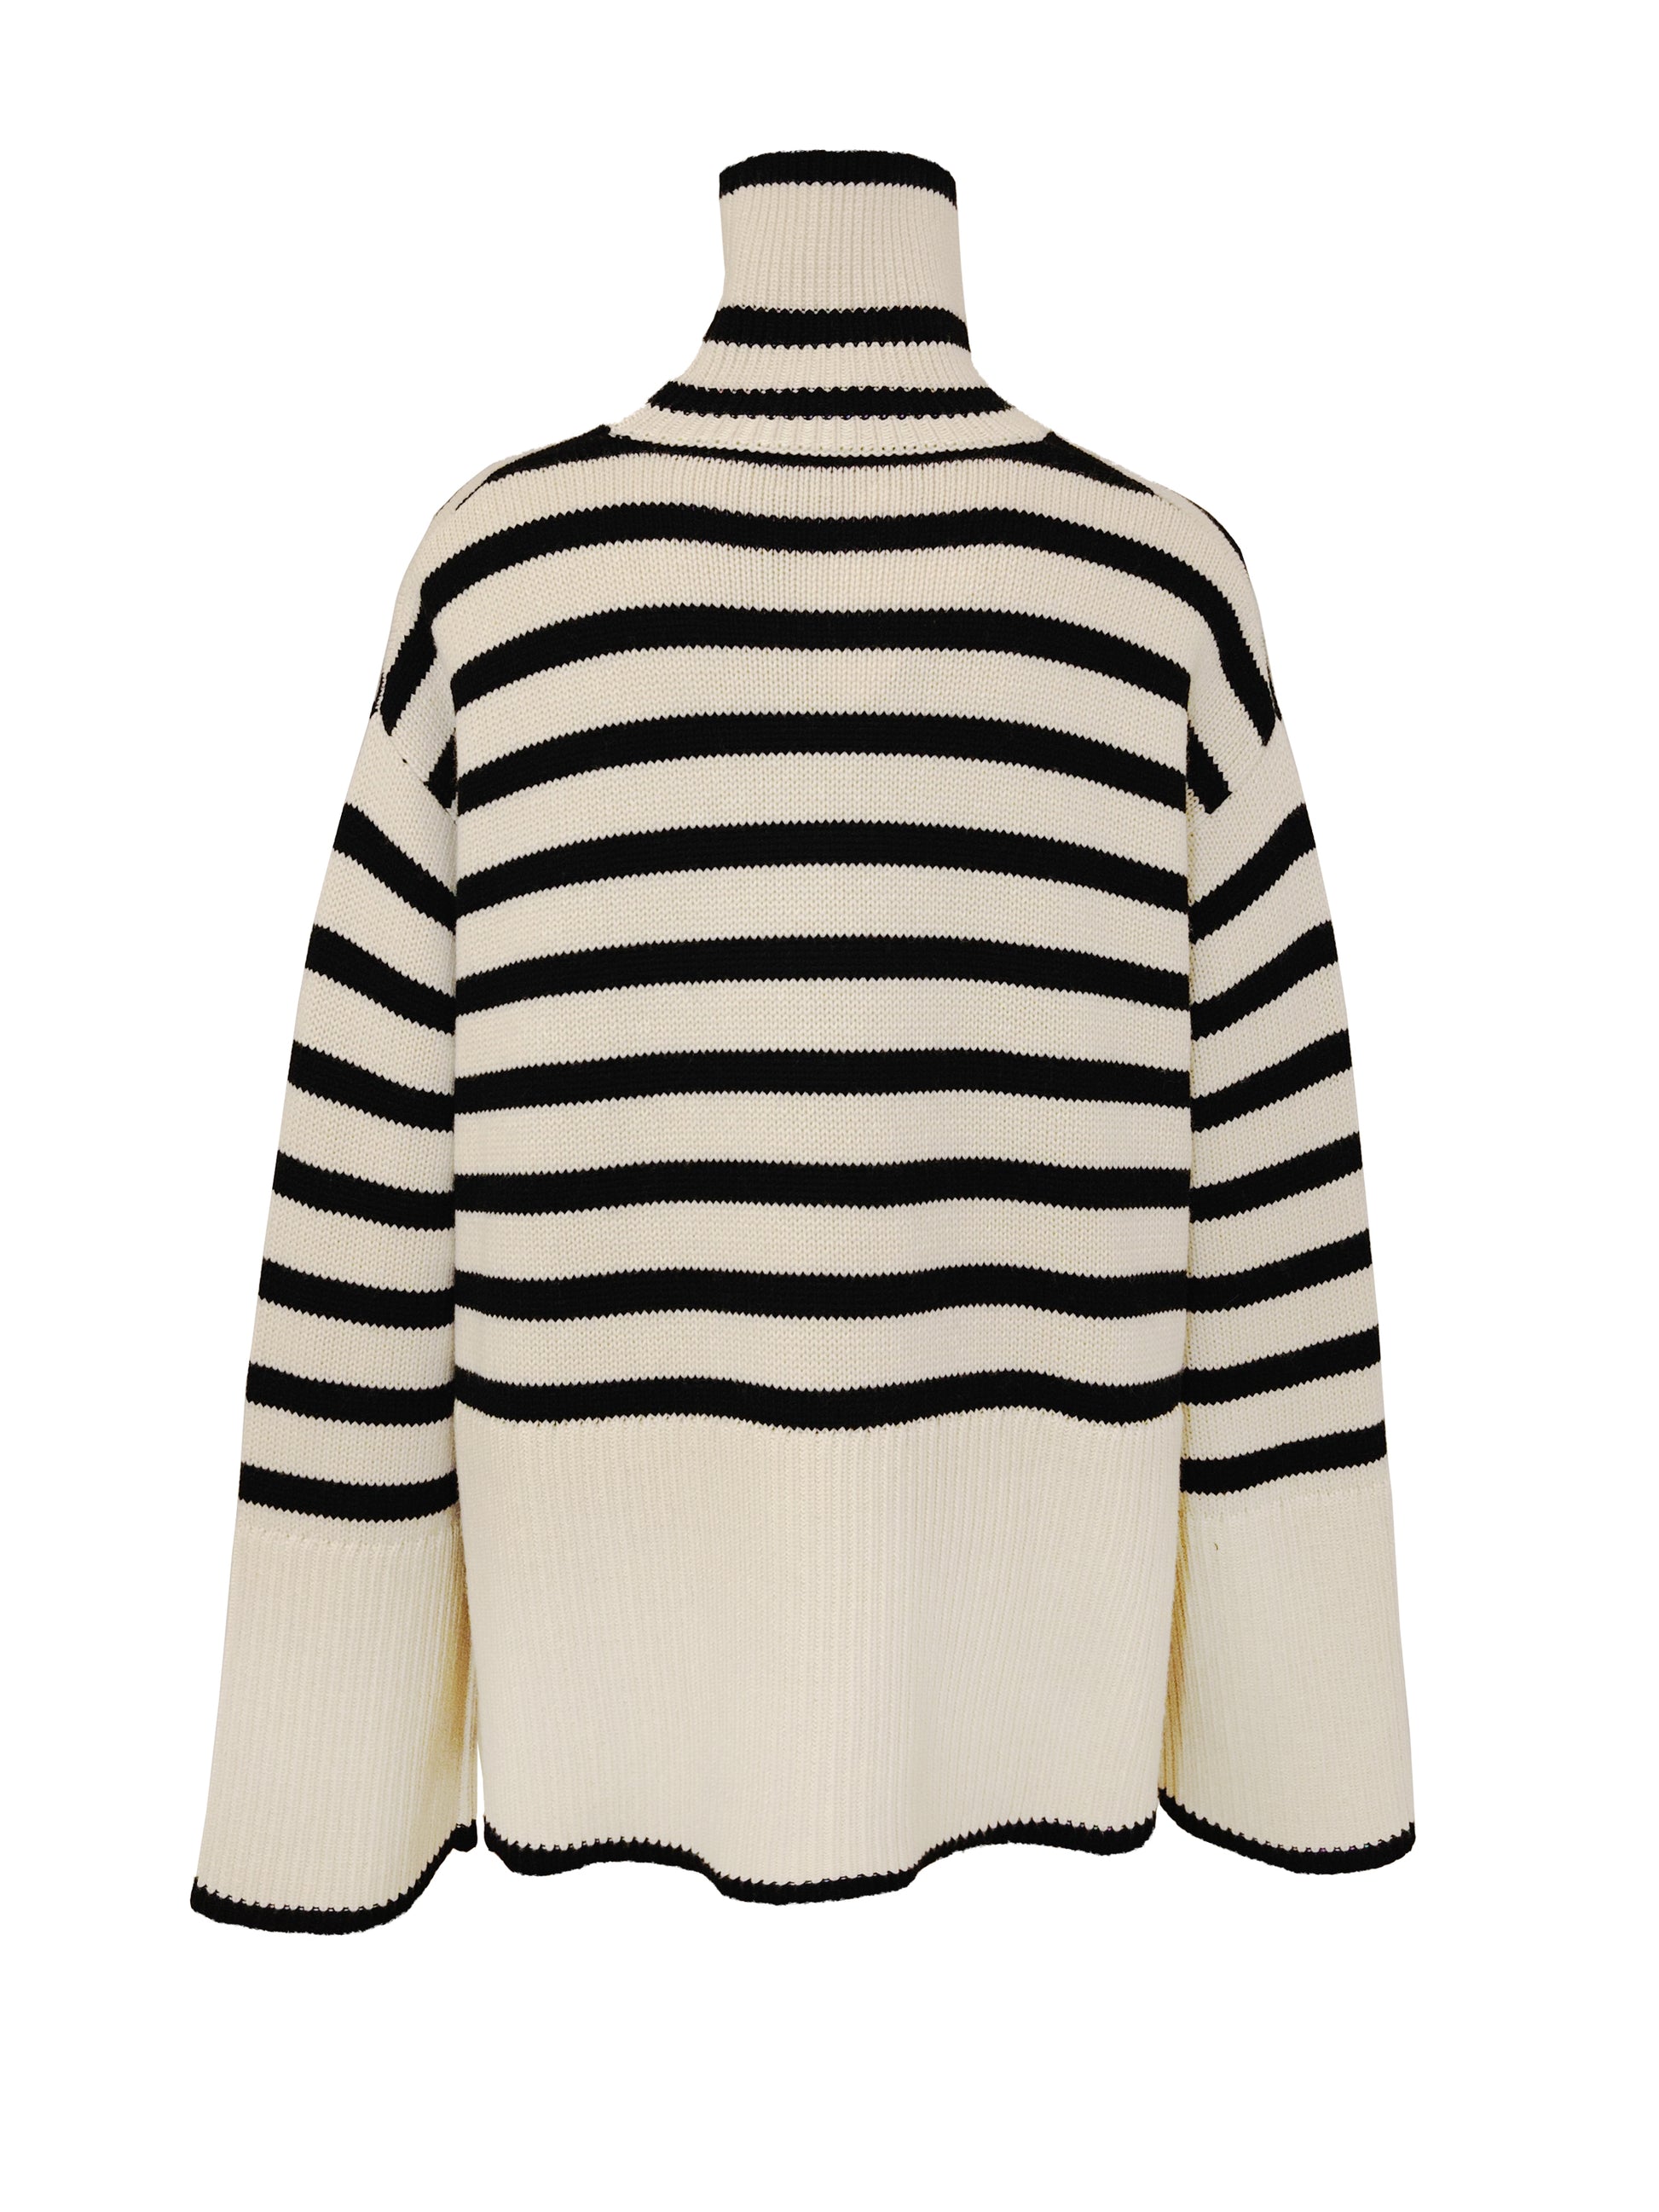 Das Rollkragendesign zusammen mit einem lockeren Schnitt macht diesen Pullover von TOTEME zu einem einzigartigen Stück. In Kombination mit schwarzen Streifen, lässt sich der elegante Beige-Ton vielseitig kombinieren und lässt ein sehr stylisches Outfit entstehen. 